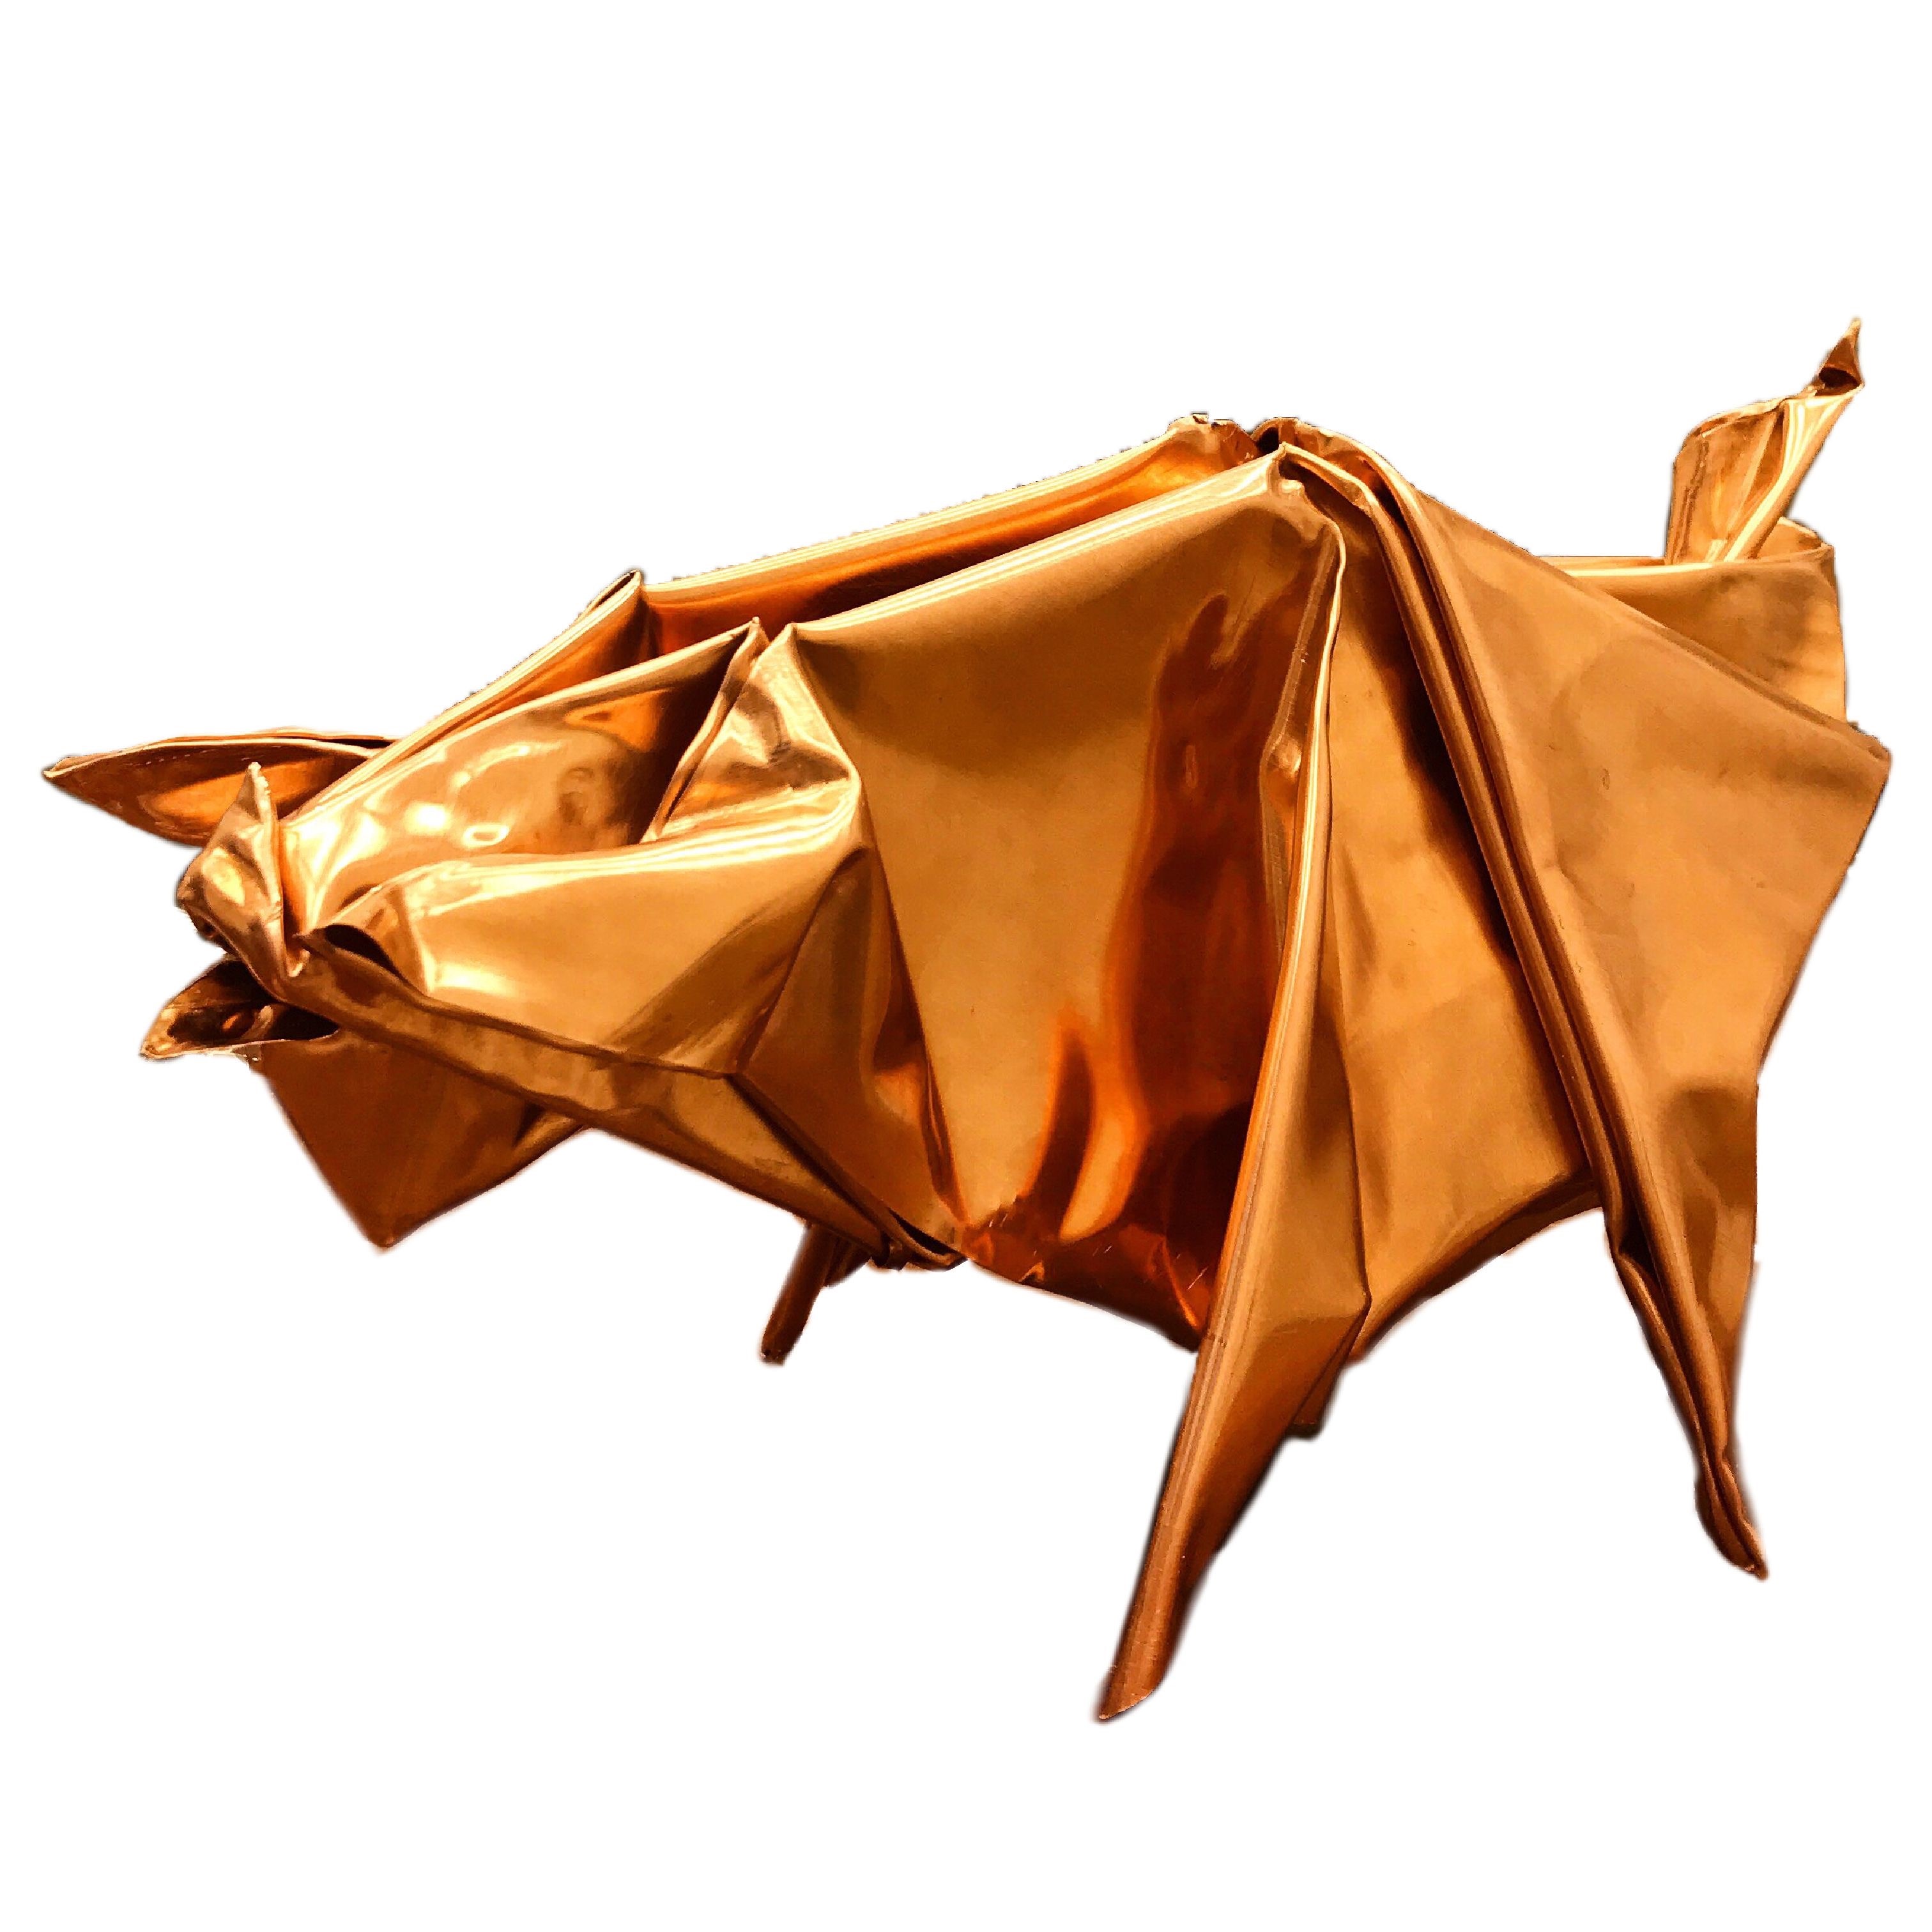 Адиль Алиев. "Свинка" (из серии "Оригами"), 2020. Медь. Фото из архива Адиля Алиева